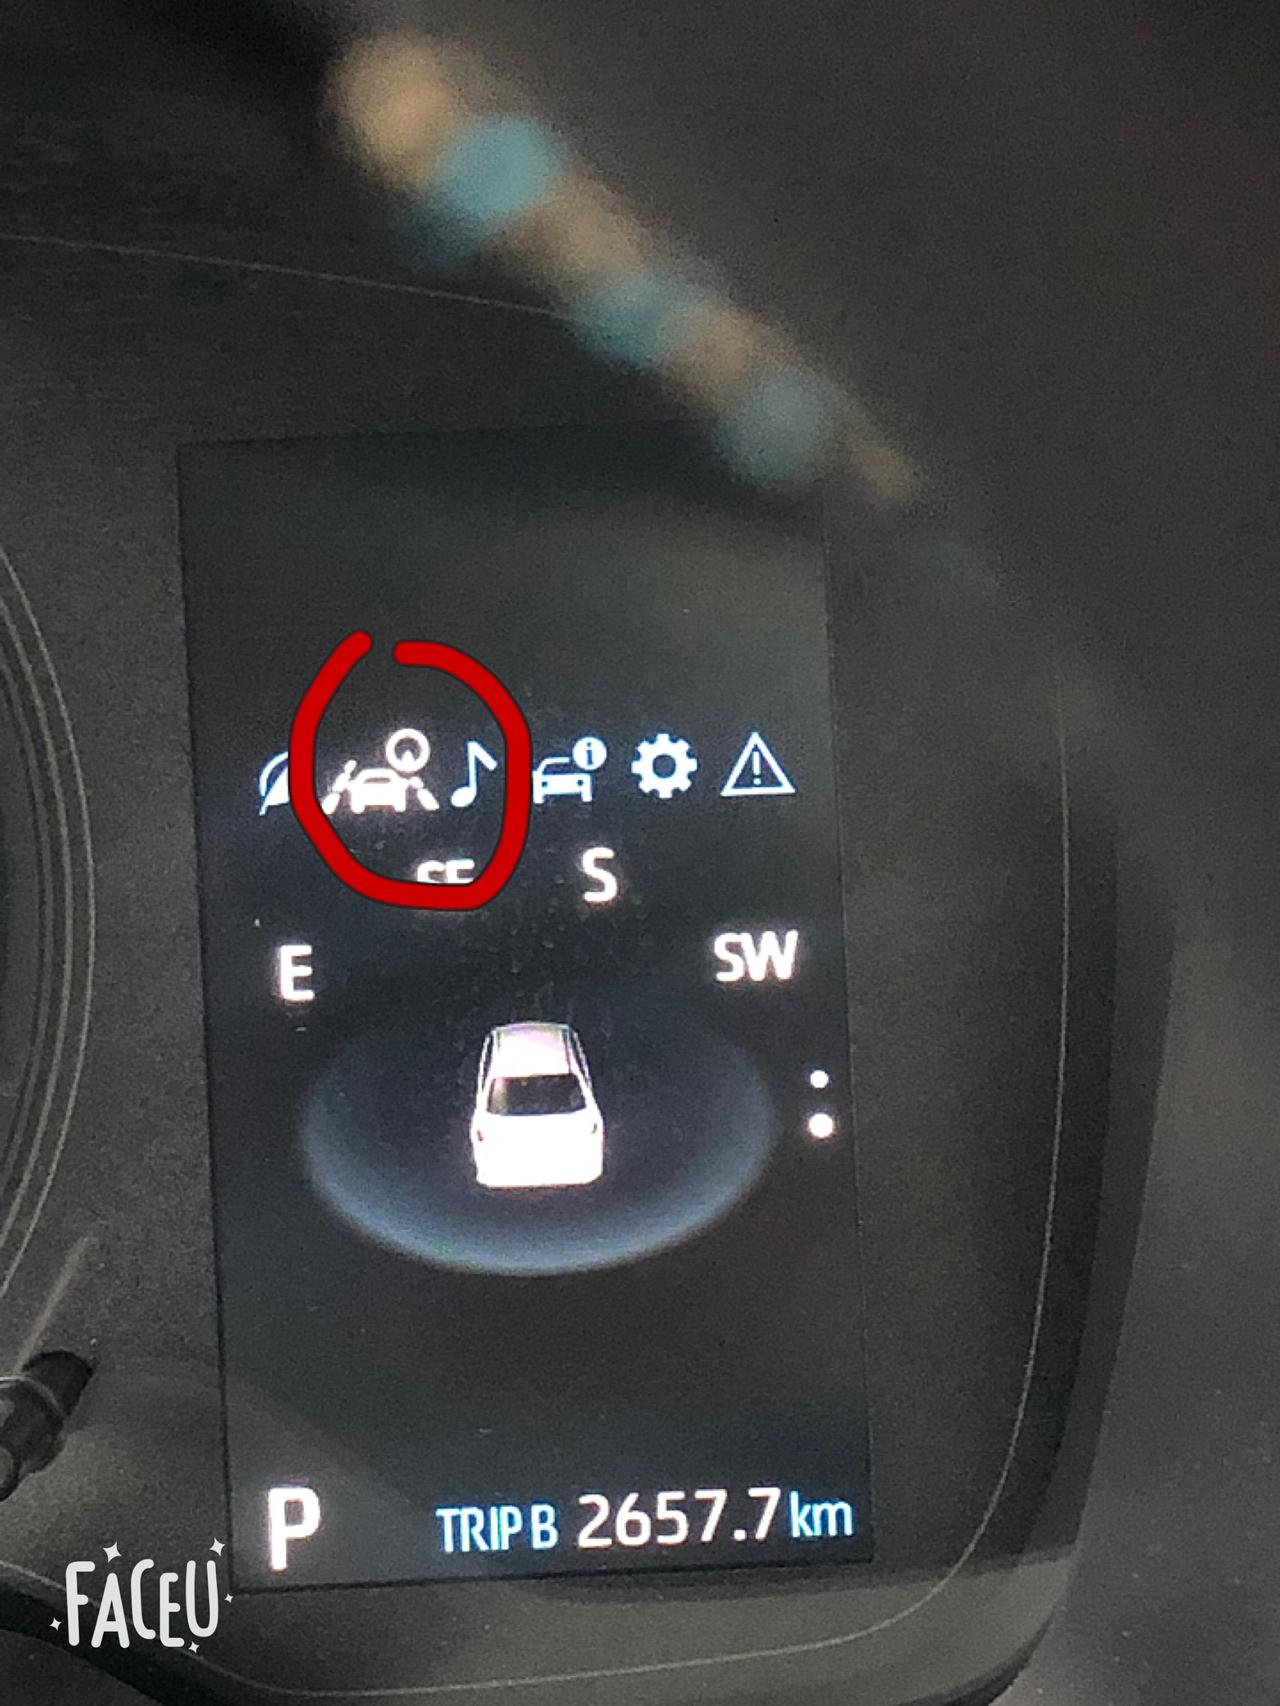 丰田卡罗拉 ，车上的多信息显示屏上的这个图标是什么意思